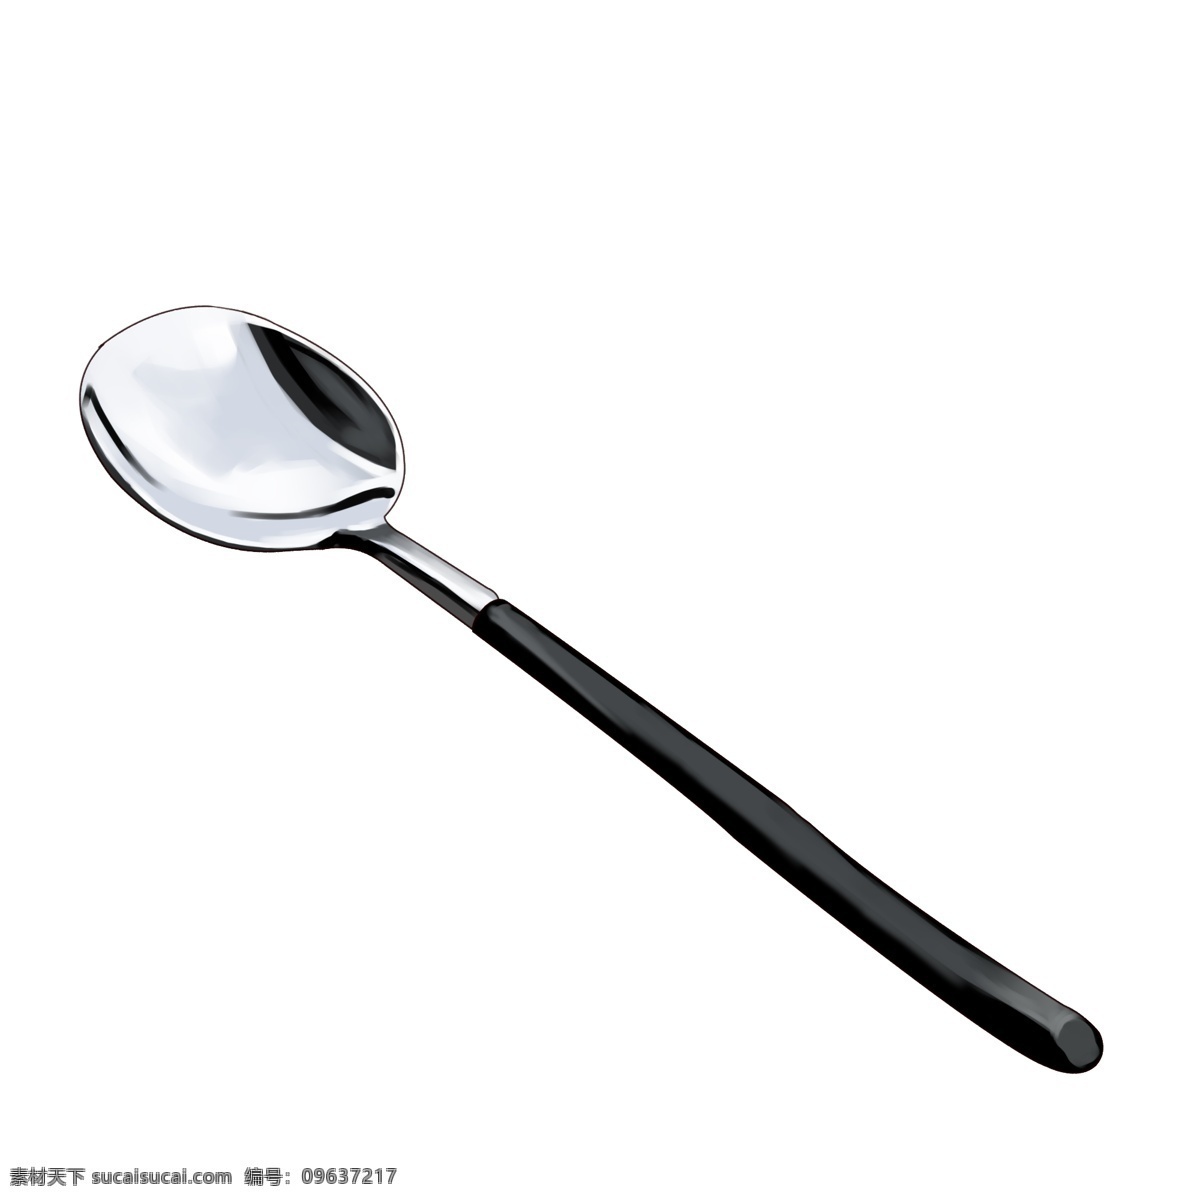 黑色 手柄 金属 勺子 插图 金属勺子 黑色手柄 仿真 光滑 半圆 实物 汤勺 餐具用品 简约 饭勺